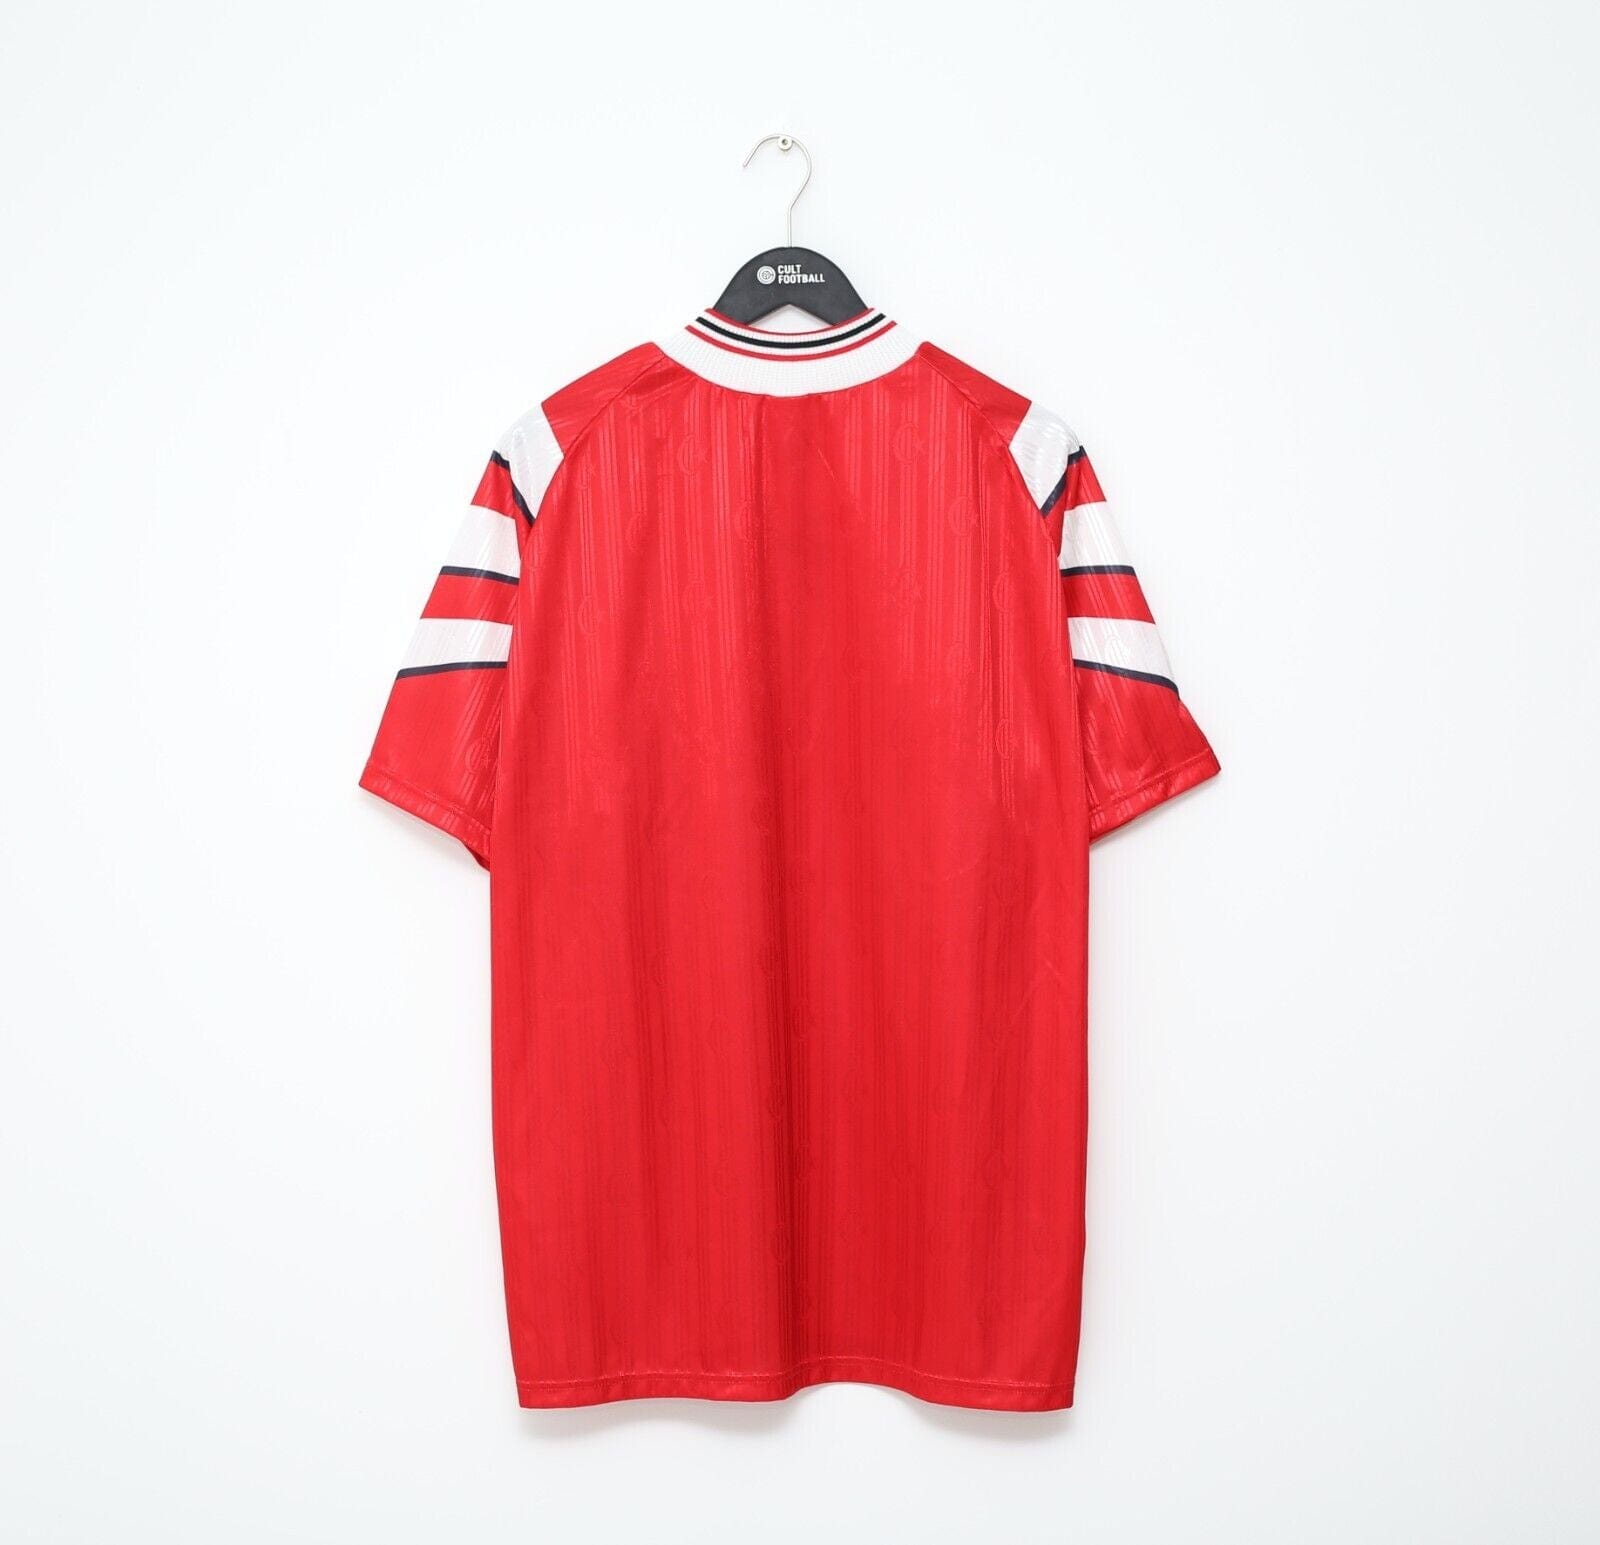 Mens Football Shirt Jersey Turkey 1996 Size XL Adidas Vintage